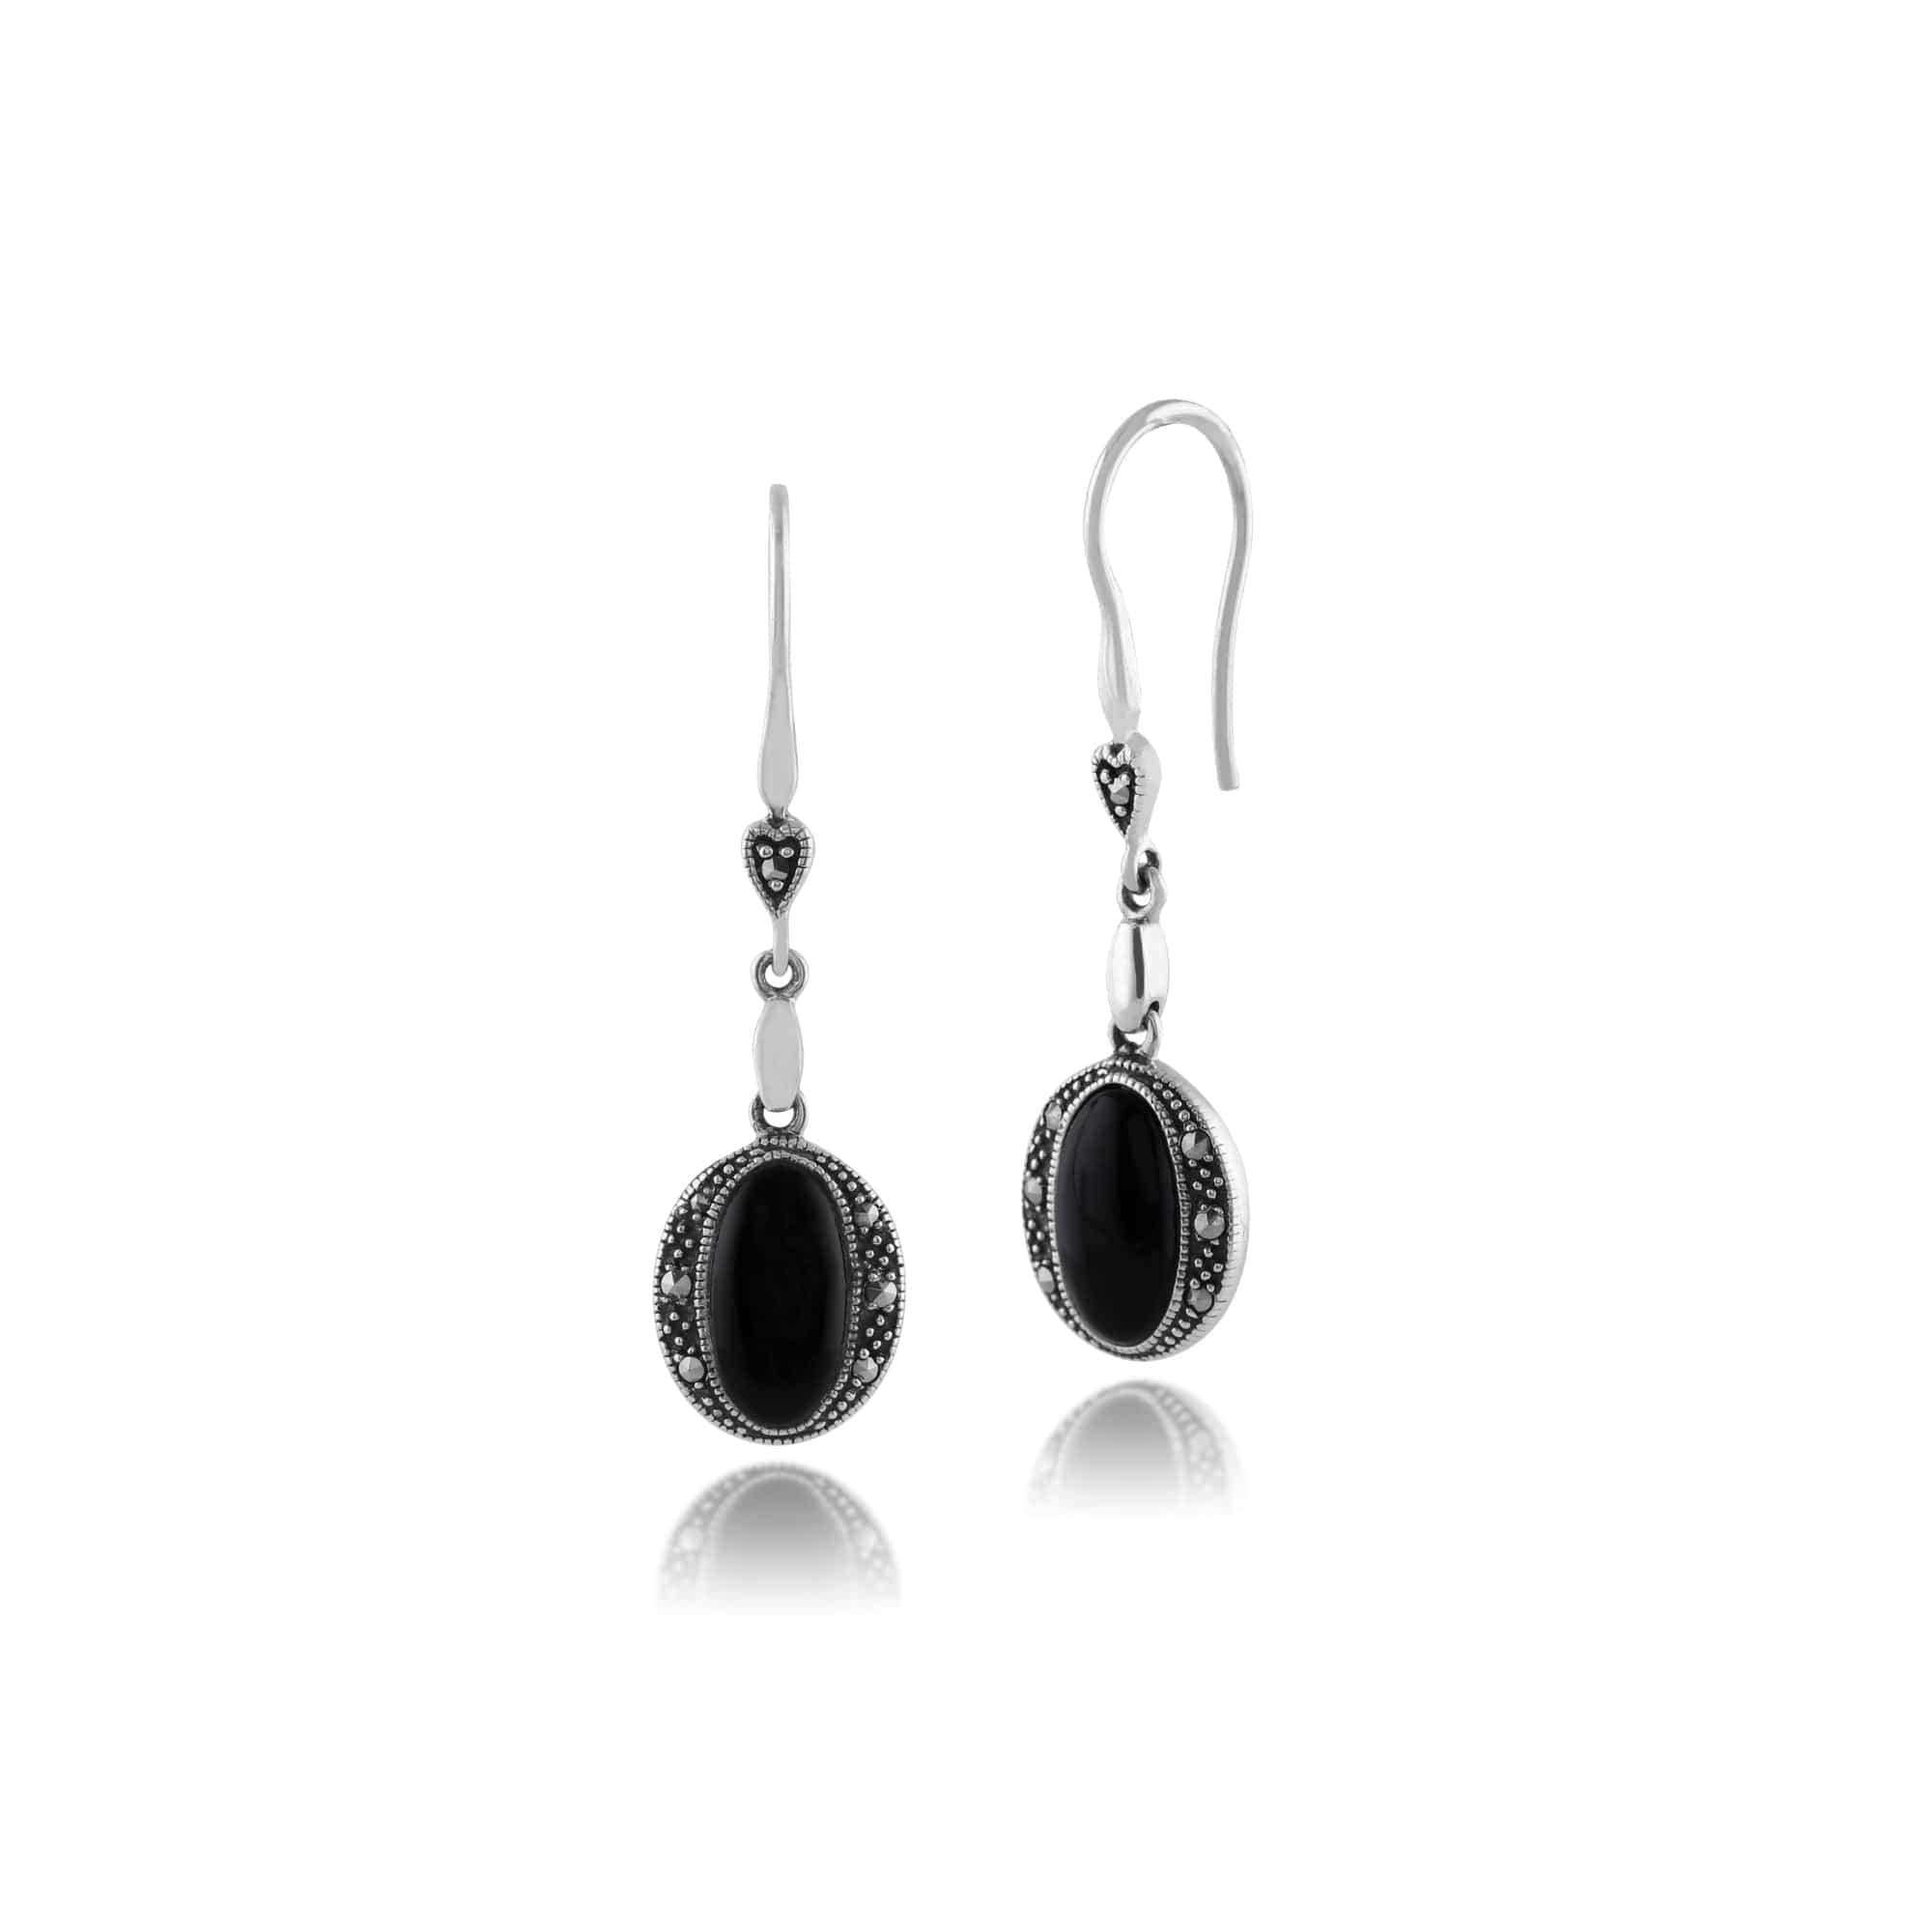 Art Deco Style Oval Black Onyx & Marcasite Drop Earrings in 925 Sterling Silver - Gemondo